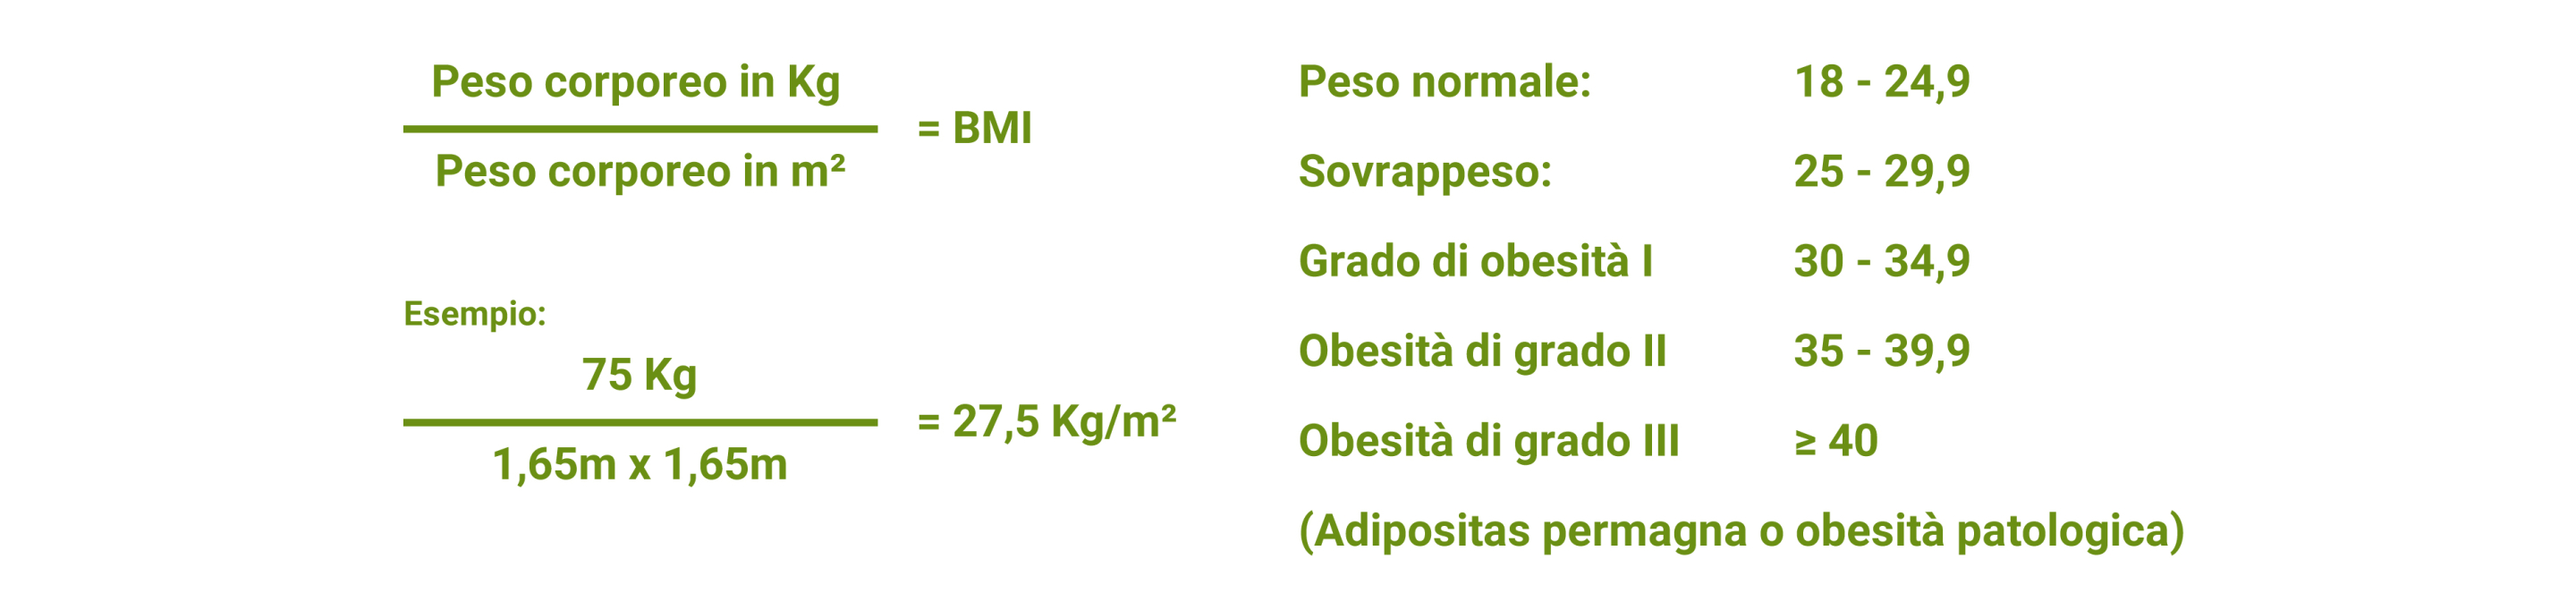 Indice di massa corporea (BMI) Calcolatore online Obesità, sovrappeso, obesità